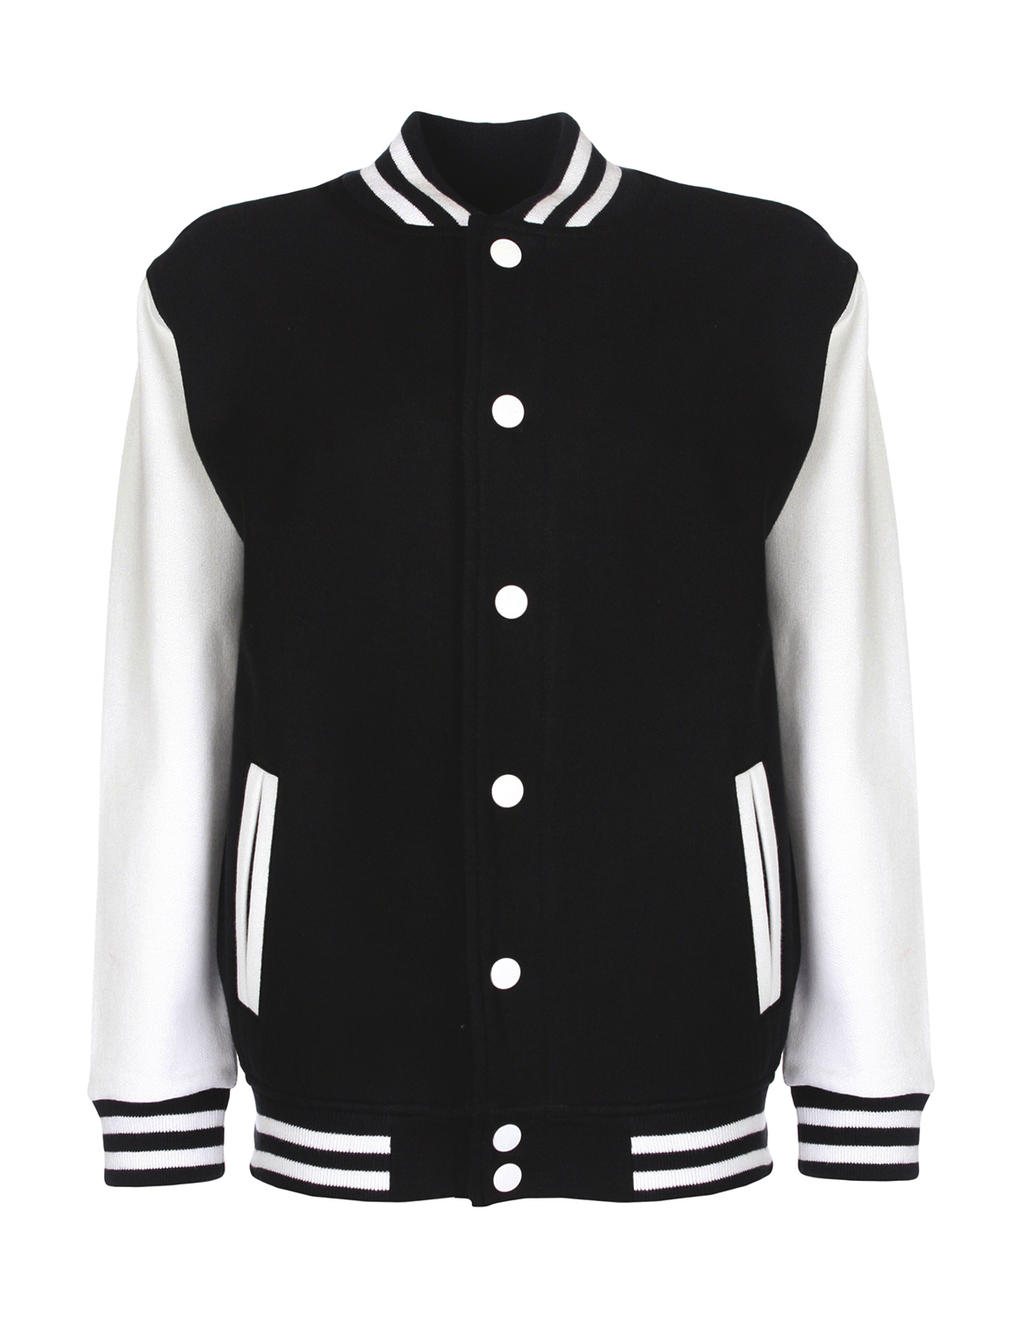  Junior Varsity Jacket in Farbe Black/White